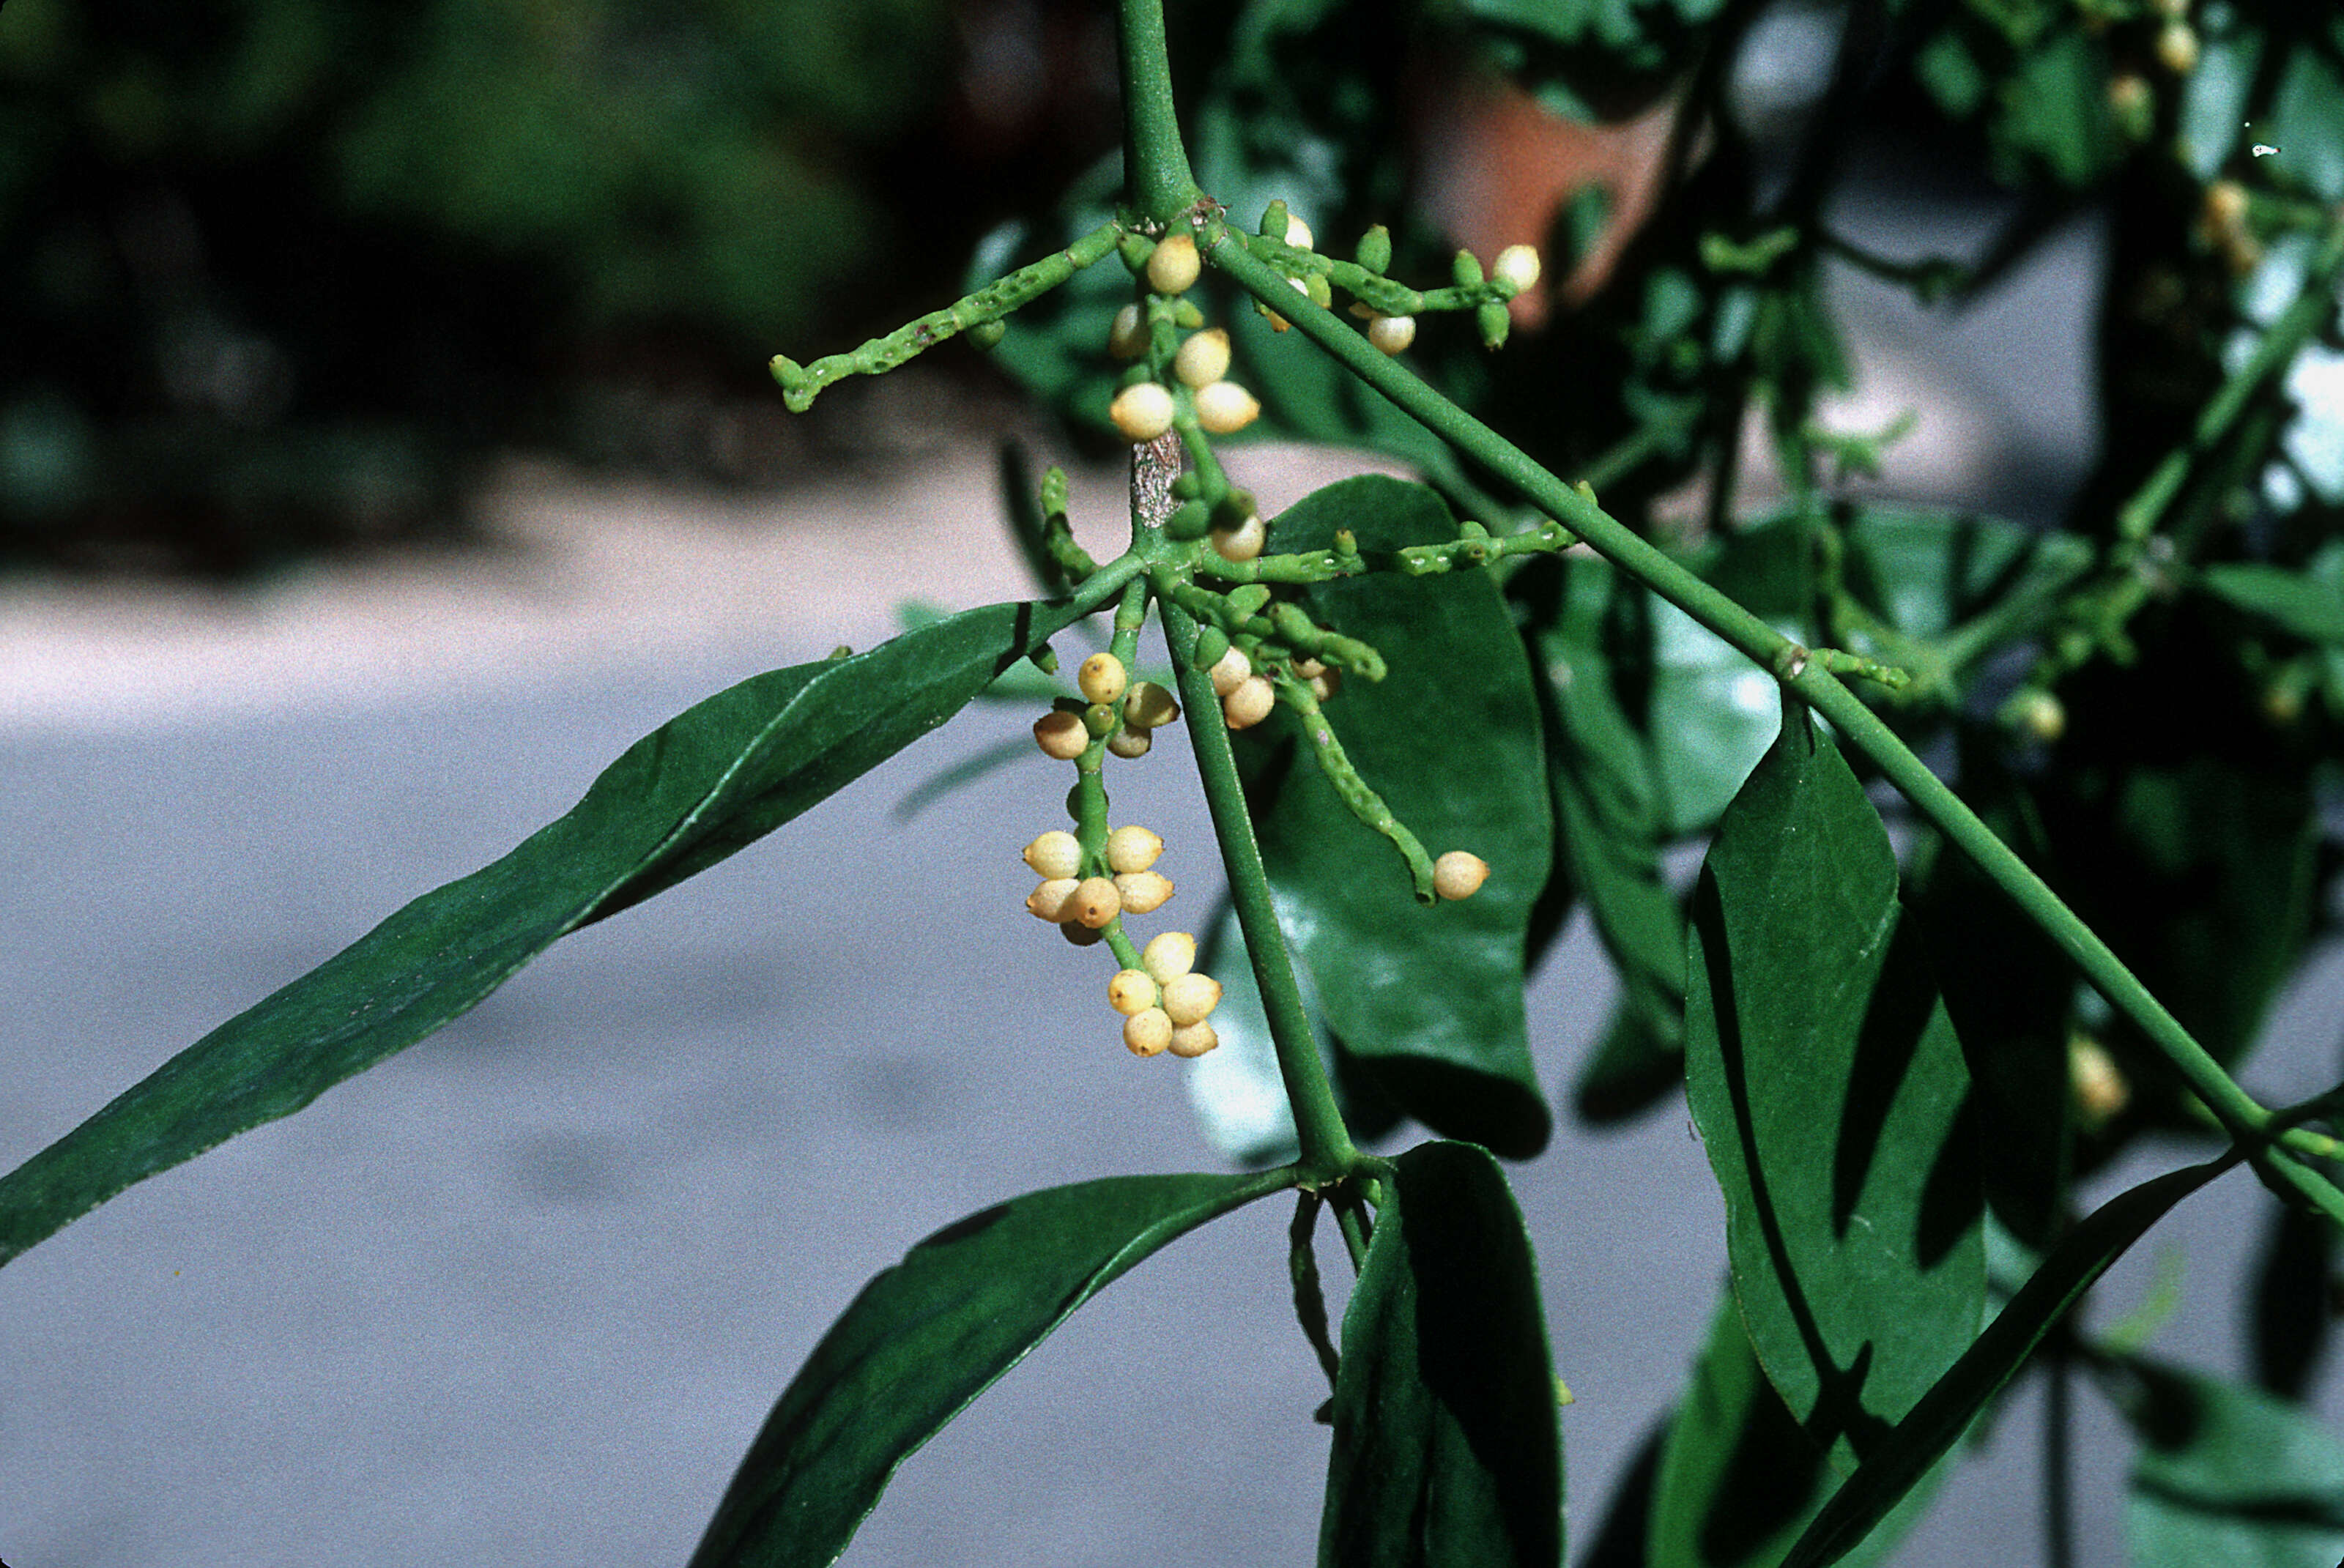 Image of goldenfruit mistletoe